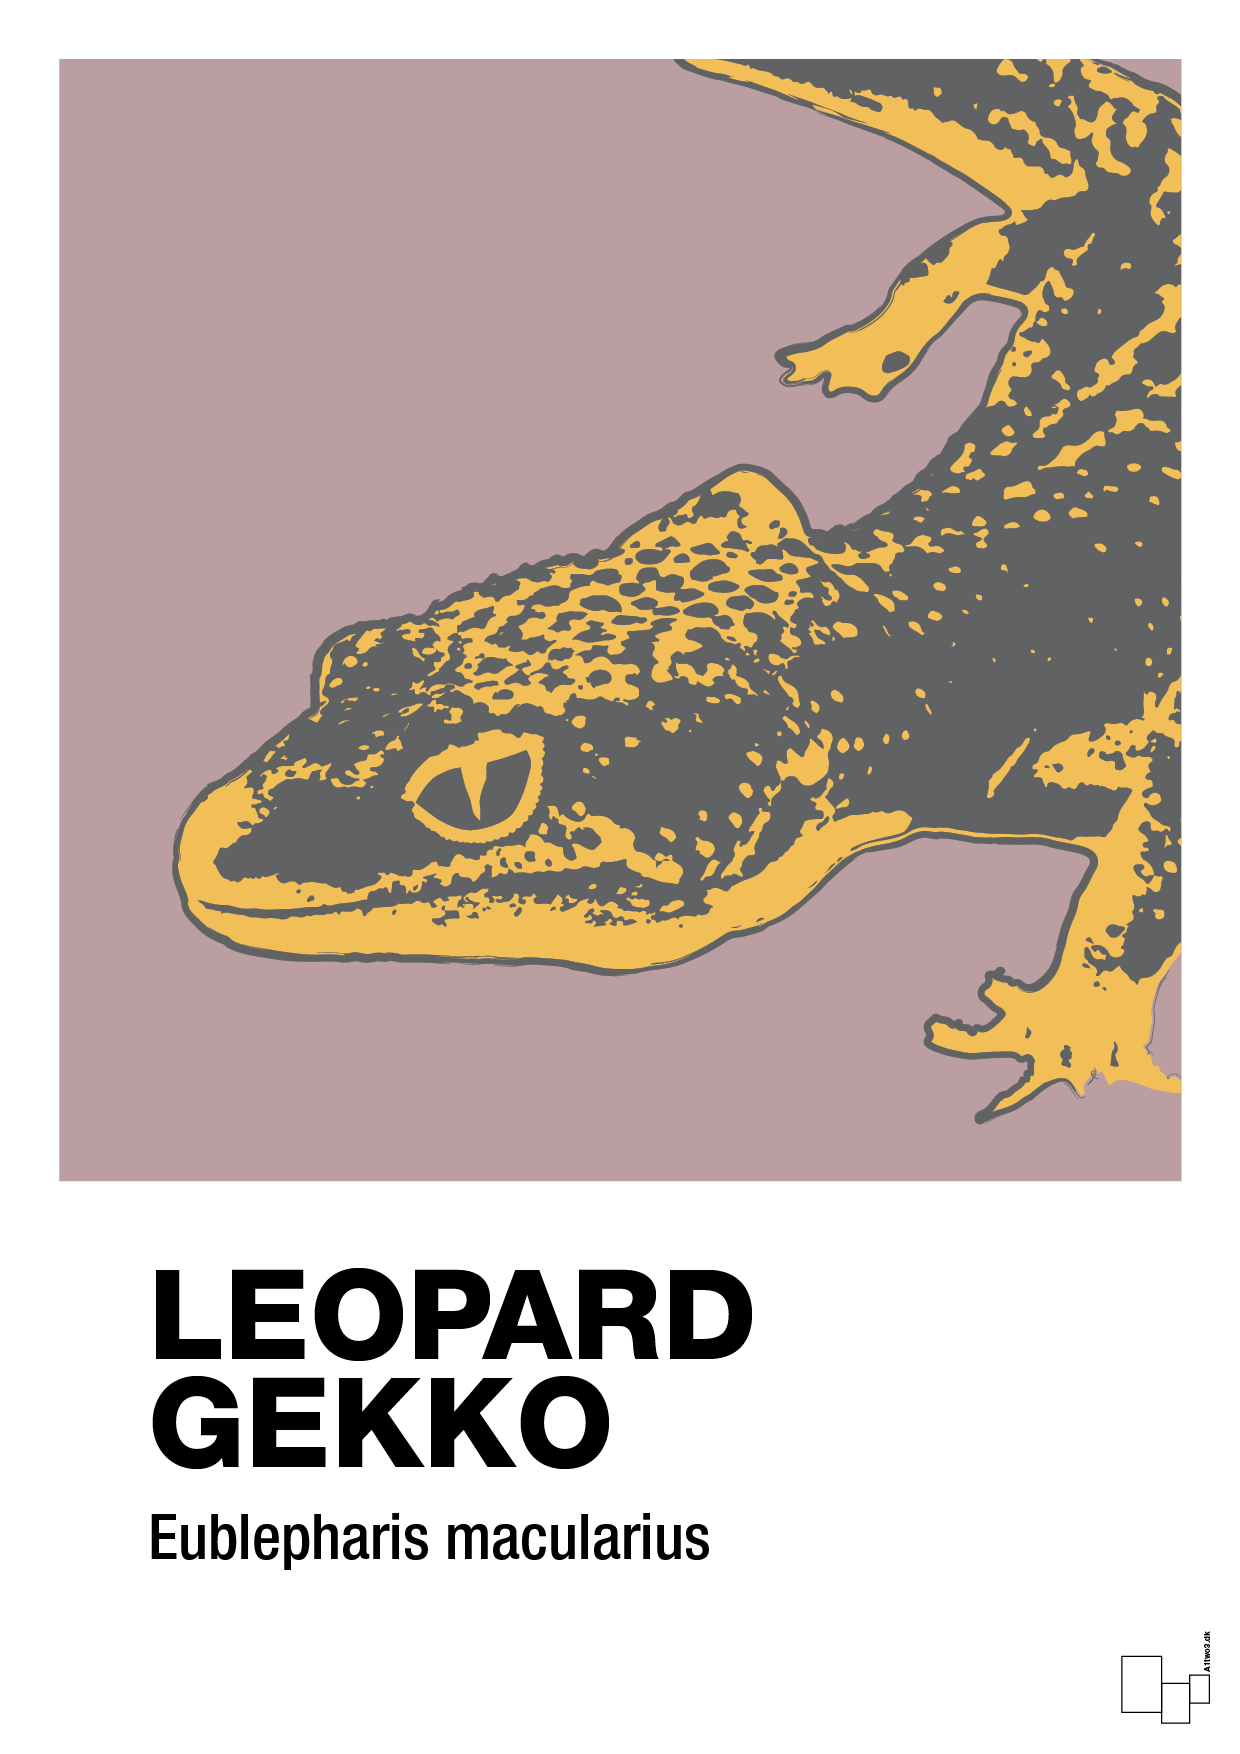 leopard gekko - Plakat med Videnskab i Light Rose